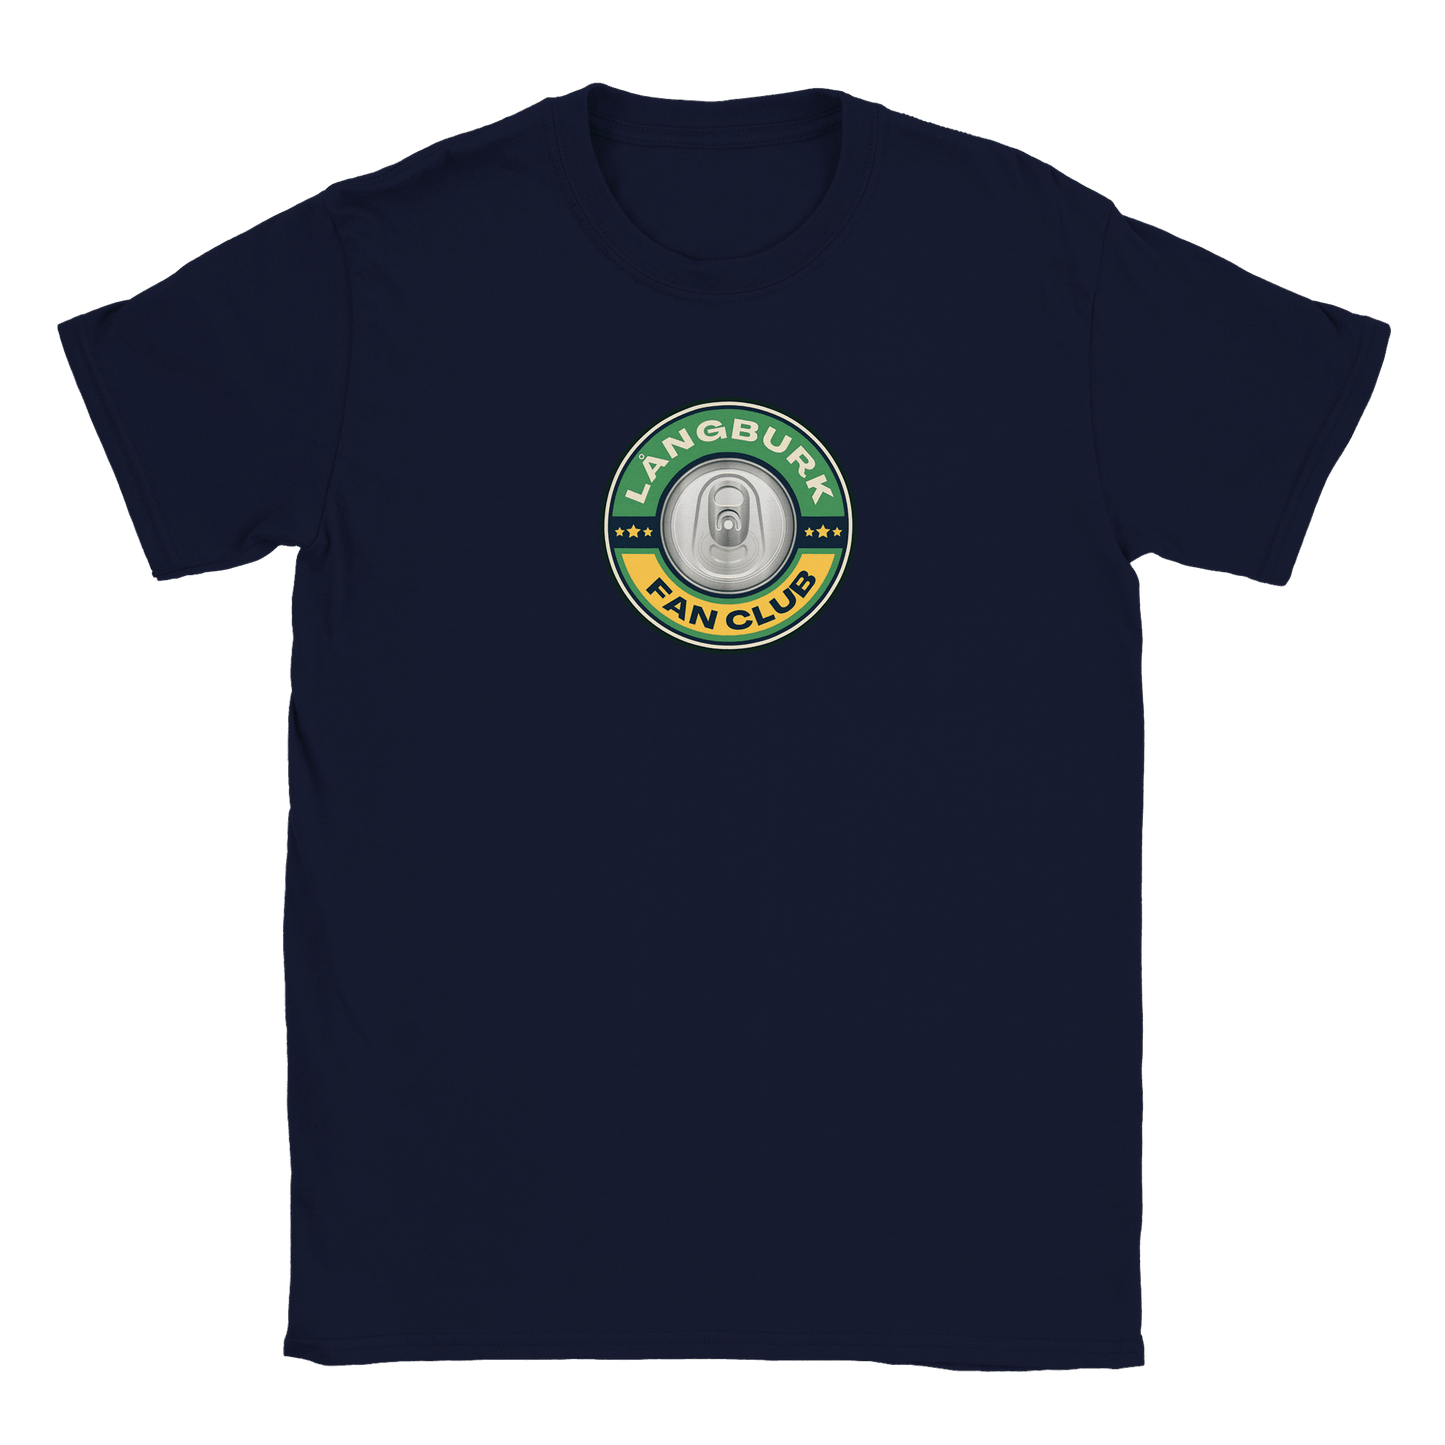 Långburk Fan Club - T-shirt Marinblå